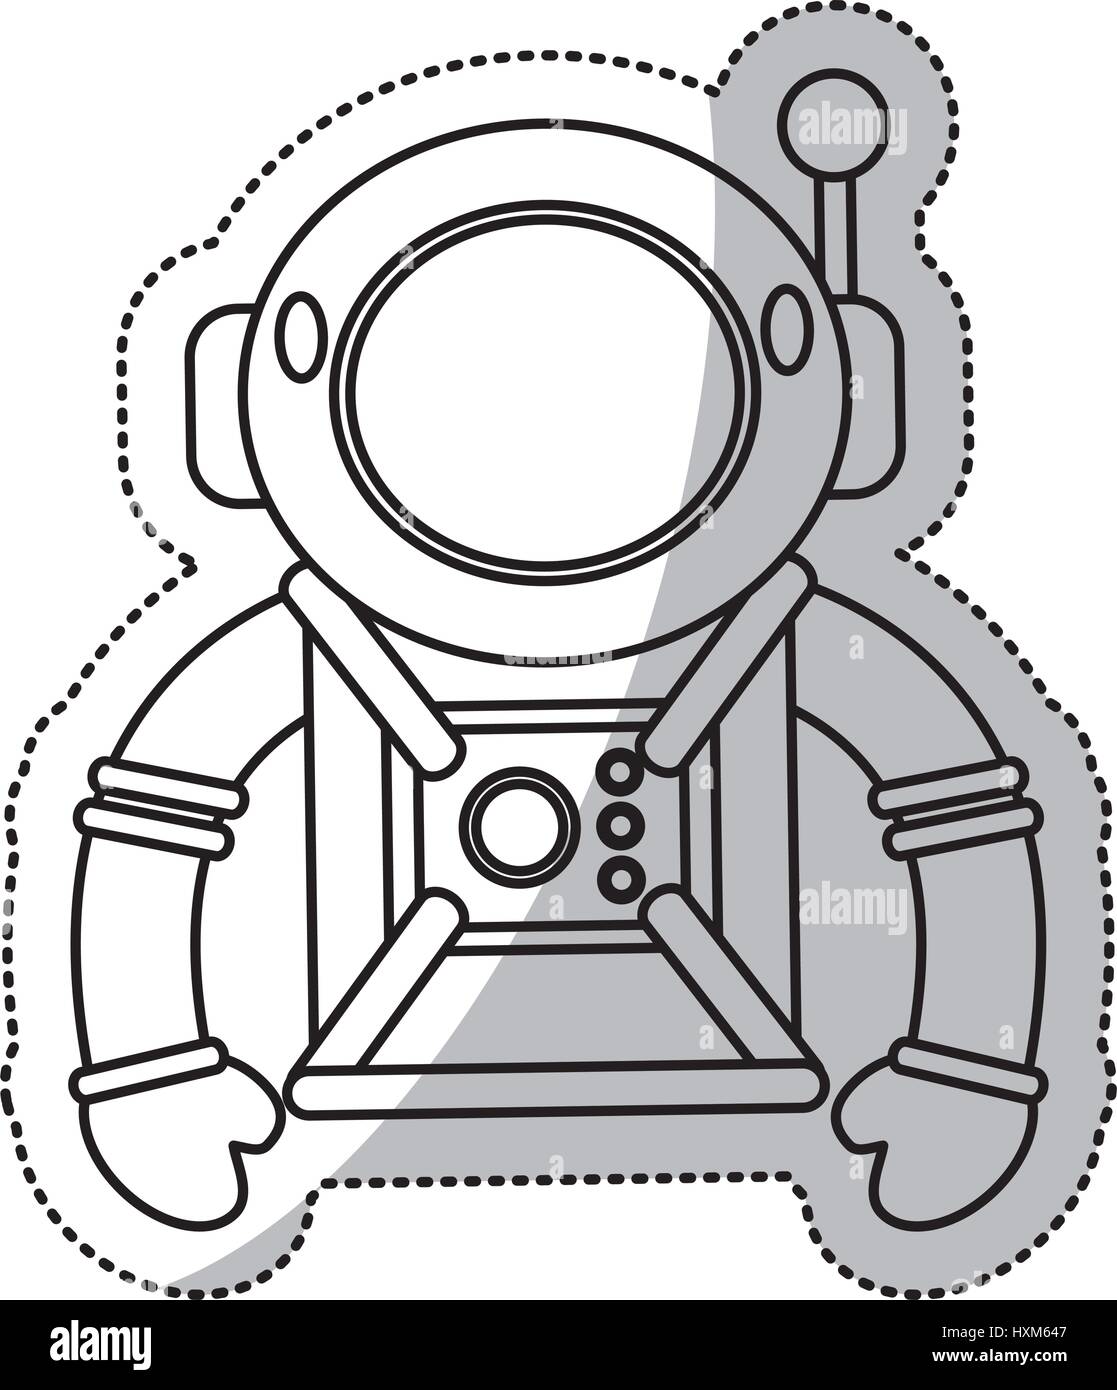 astronaut suit helmet space outline Stock Vector Image & Art - Alamy